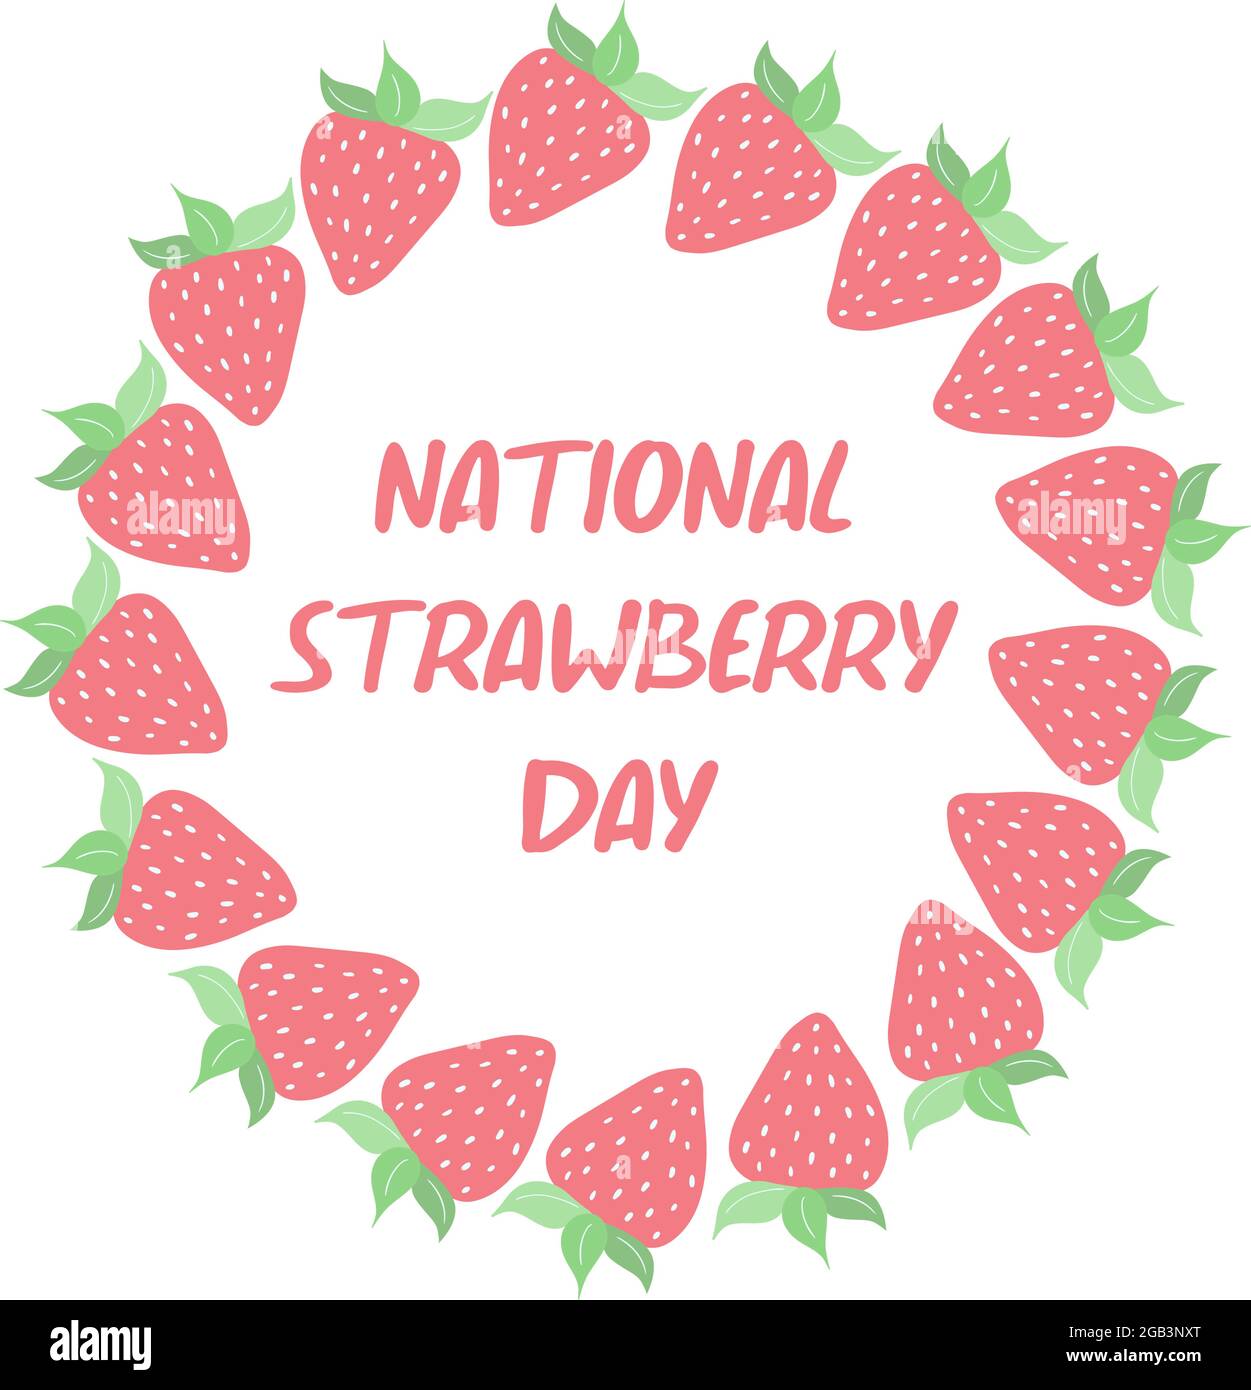 Vettore piatto doodle fragola cornice rotonda isolato su sfondo bianco. National Strawberry Day febbraio 27 - testo scritto. Spazio di copia. Modello per invito, pubblicità estiva. Illustrazione Vettoriale